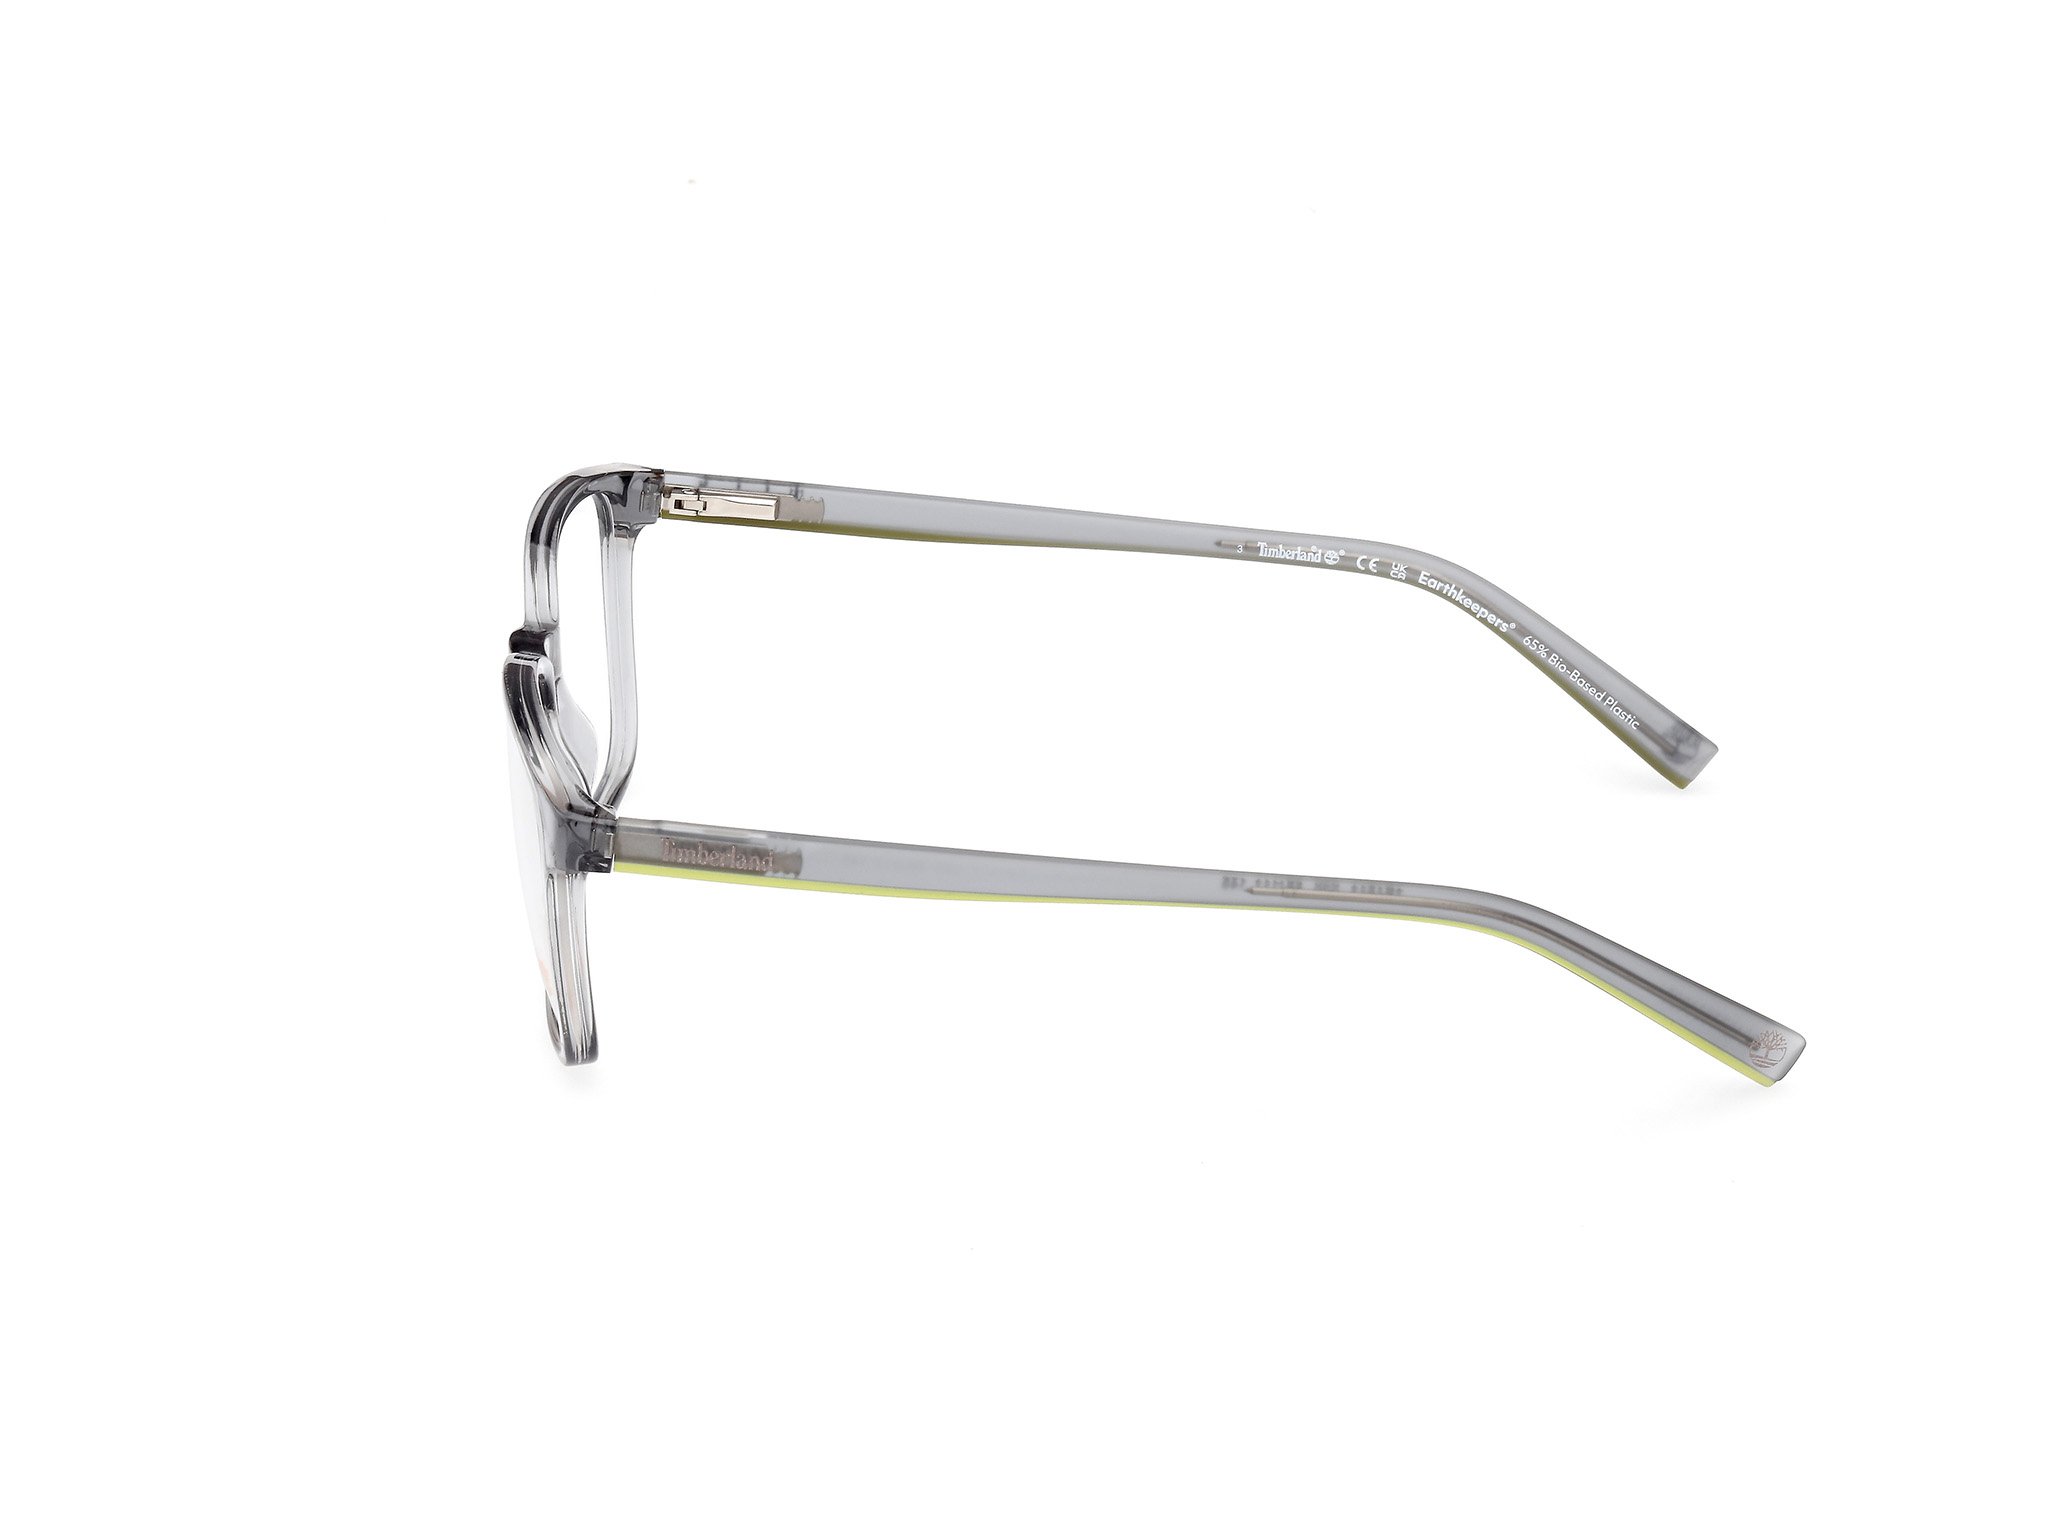 Das Bild zeigt die Korrektionsbrille TB1817 020 von der Marke Timberland in grau.